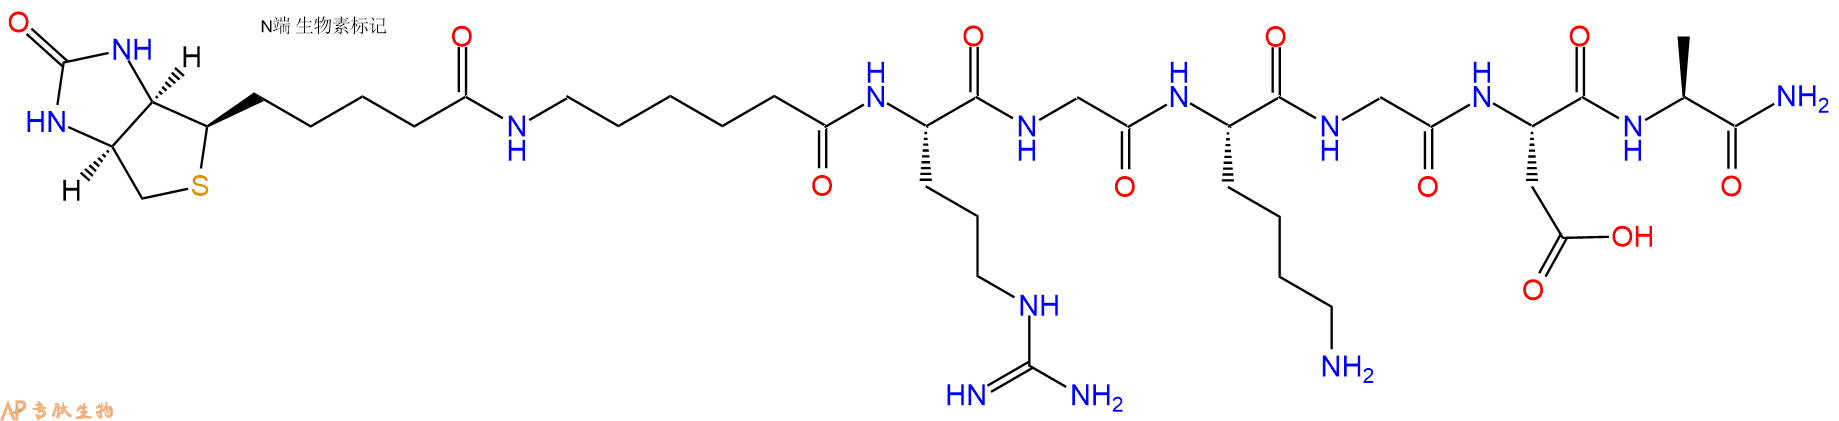 专肽生物产品Biotin-Ahx-Arg-Gly-Lys-Gly-Asp-Ala-NH2